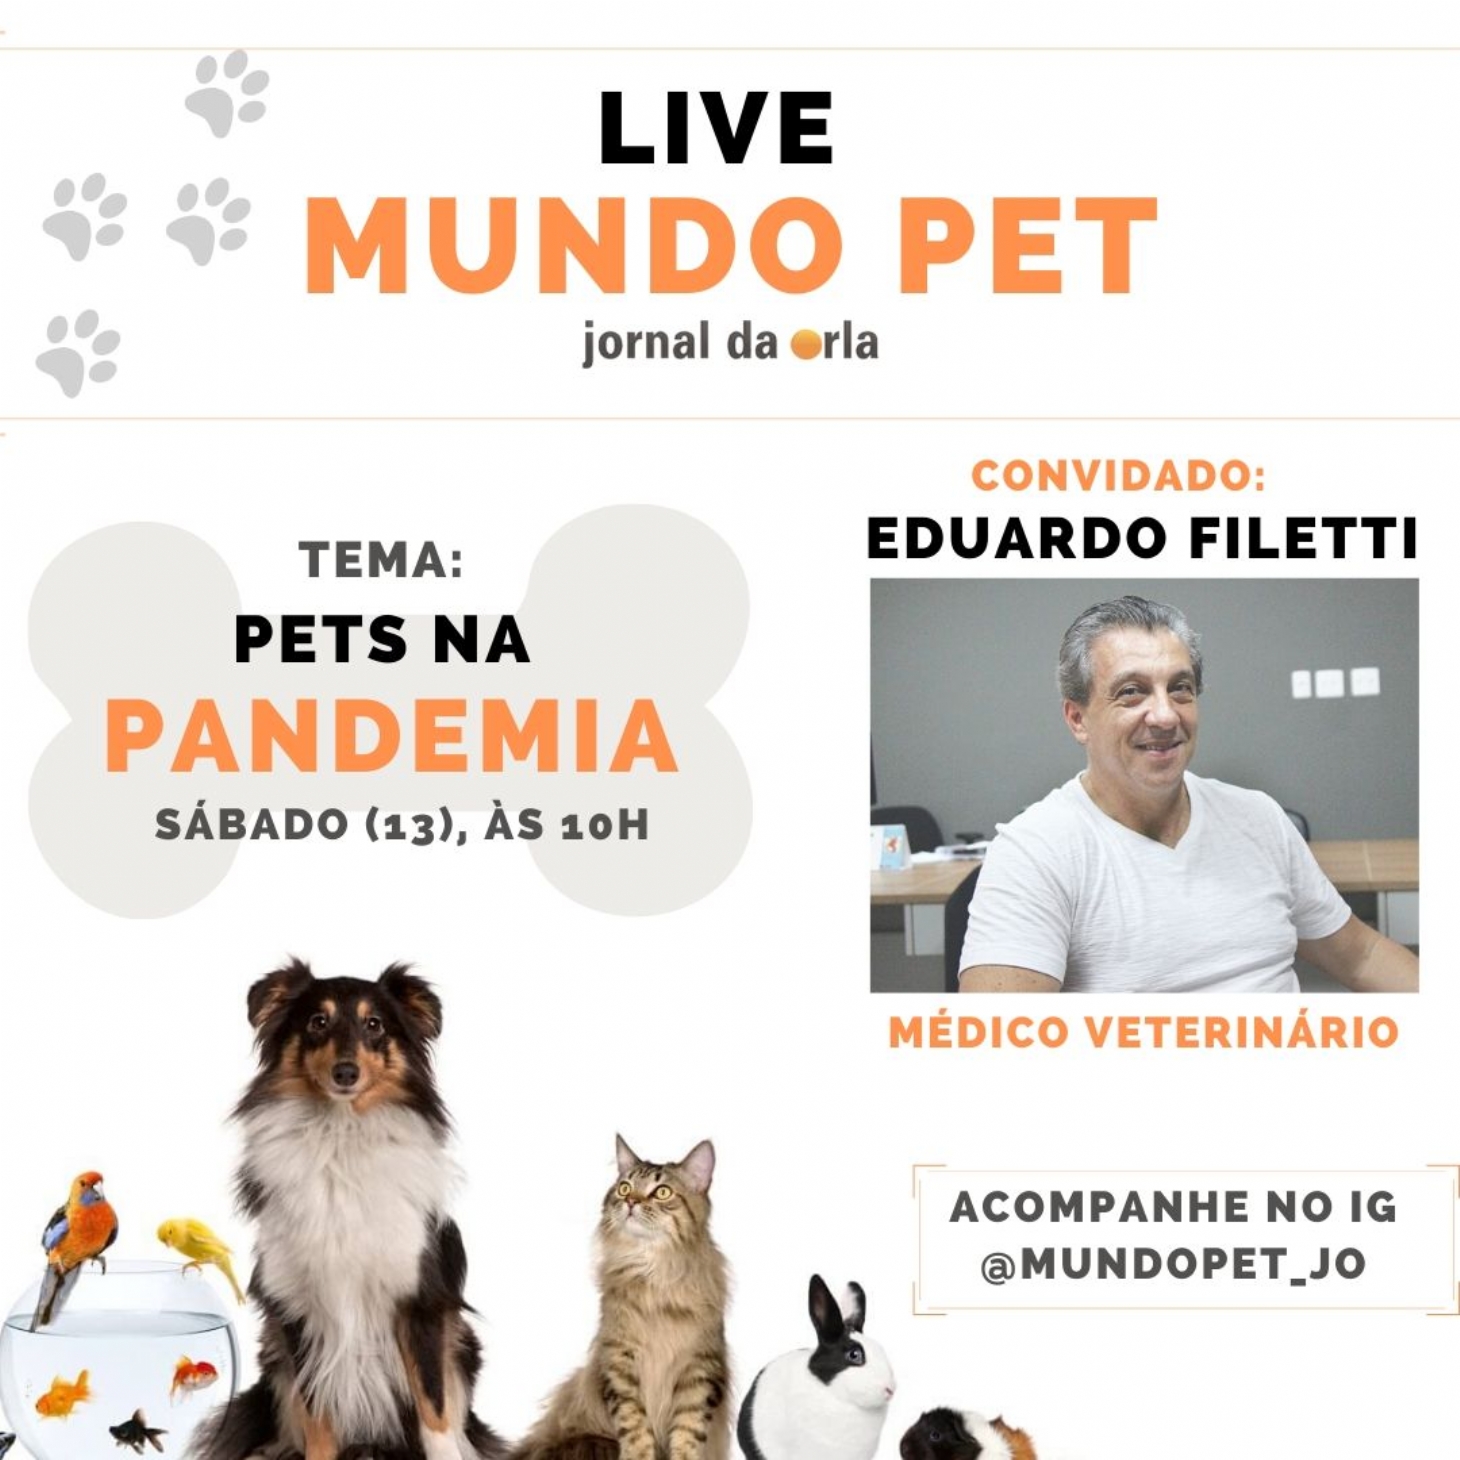 Coluna Mundo Pet lança lives no Instagram | Jornal da Orla